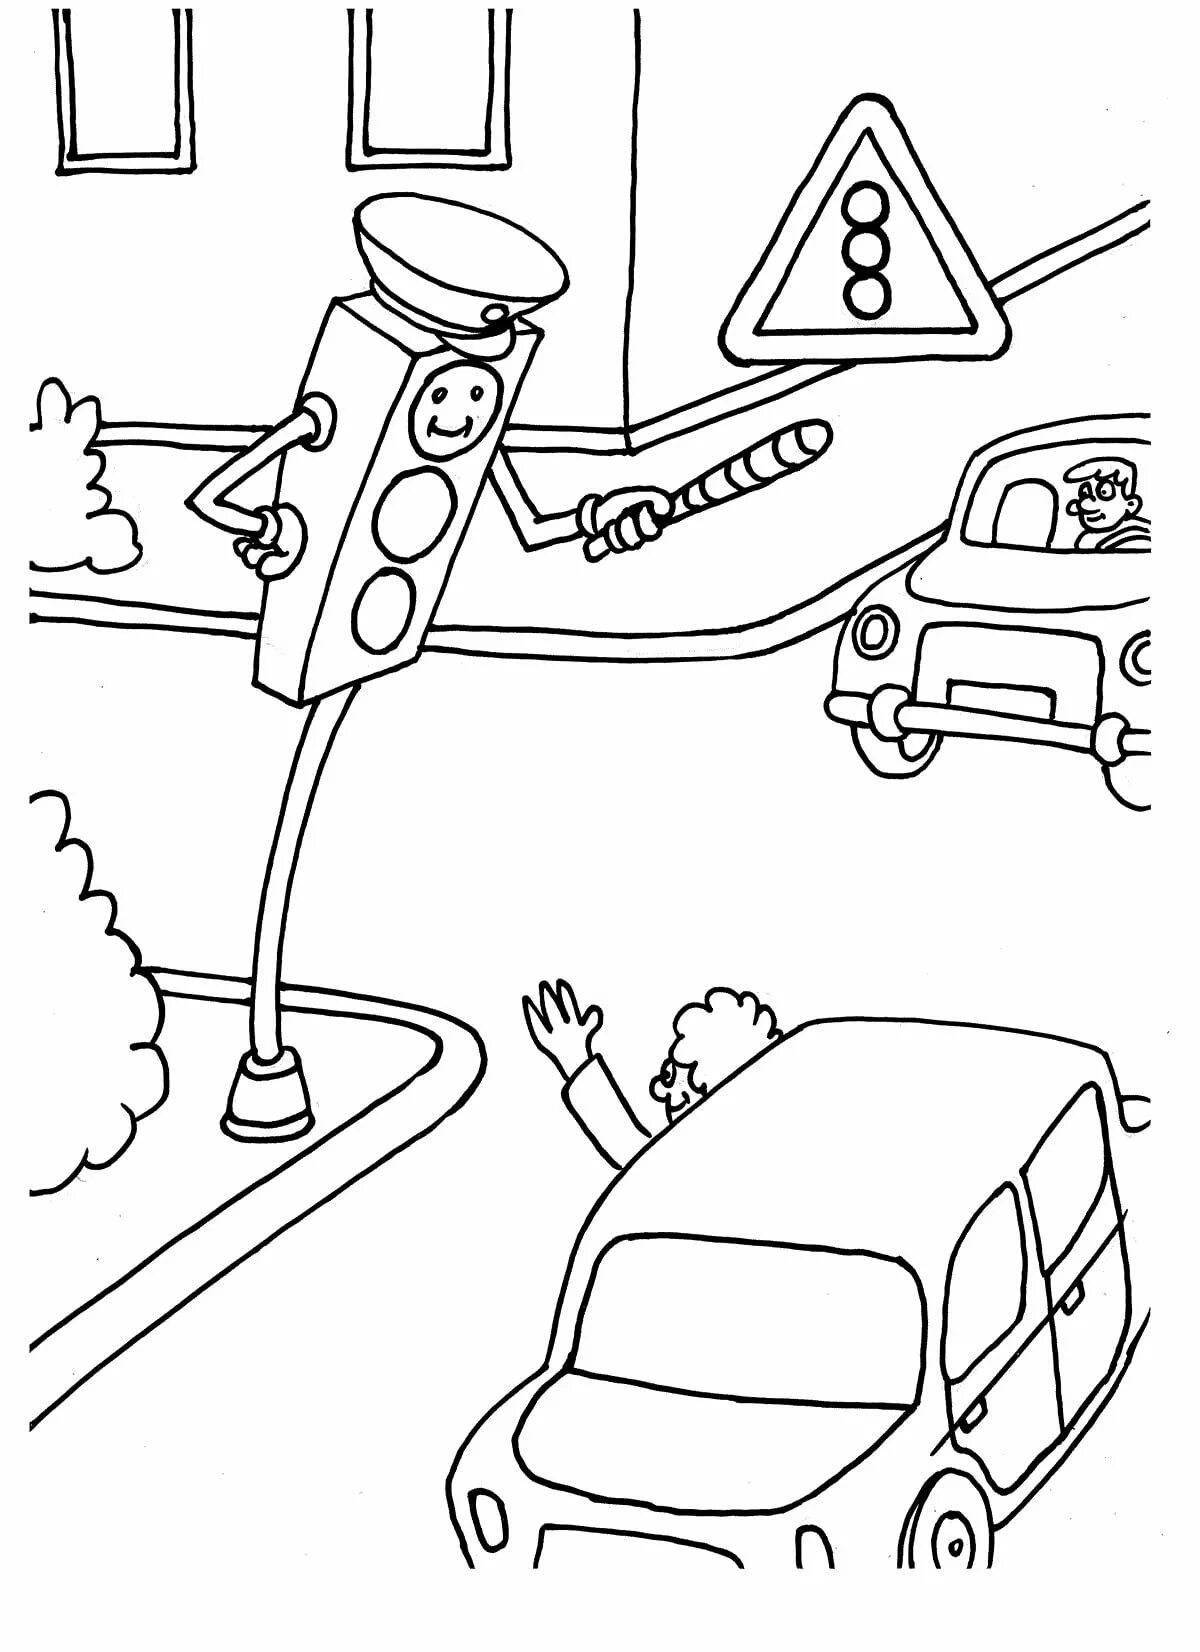 Креативные правила дорожного движения раскраски для детей 6-7 лет